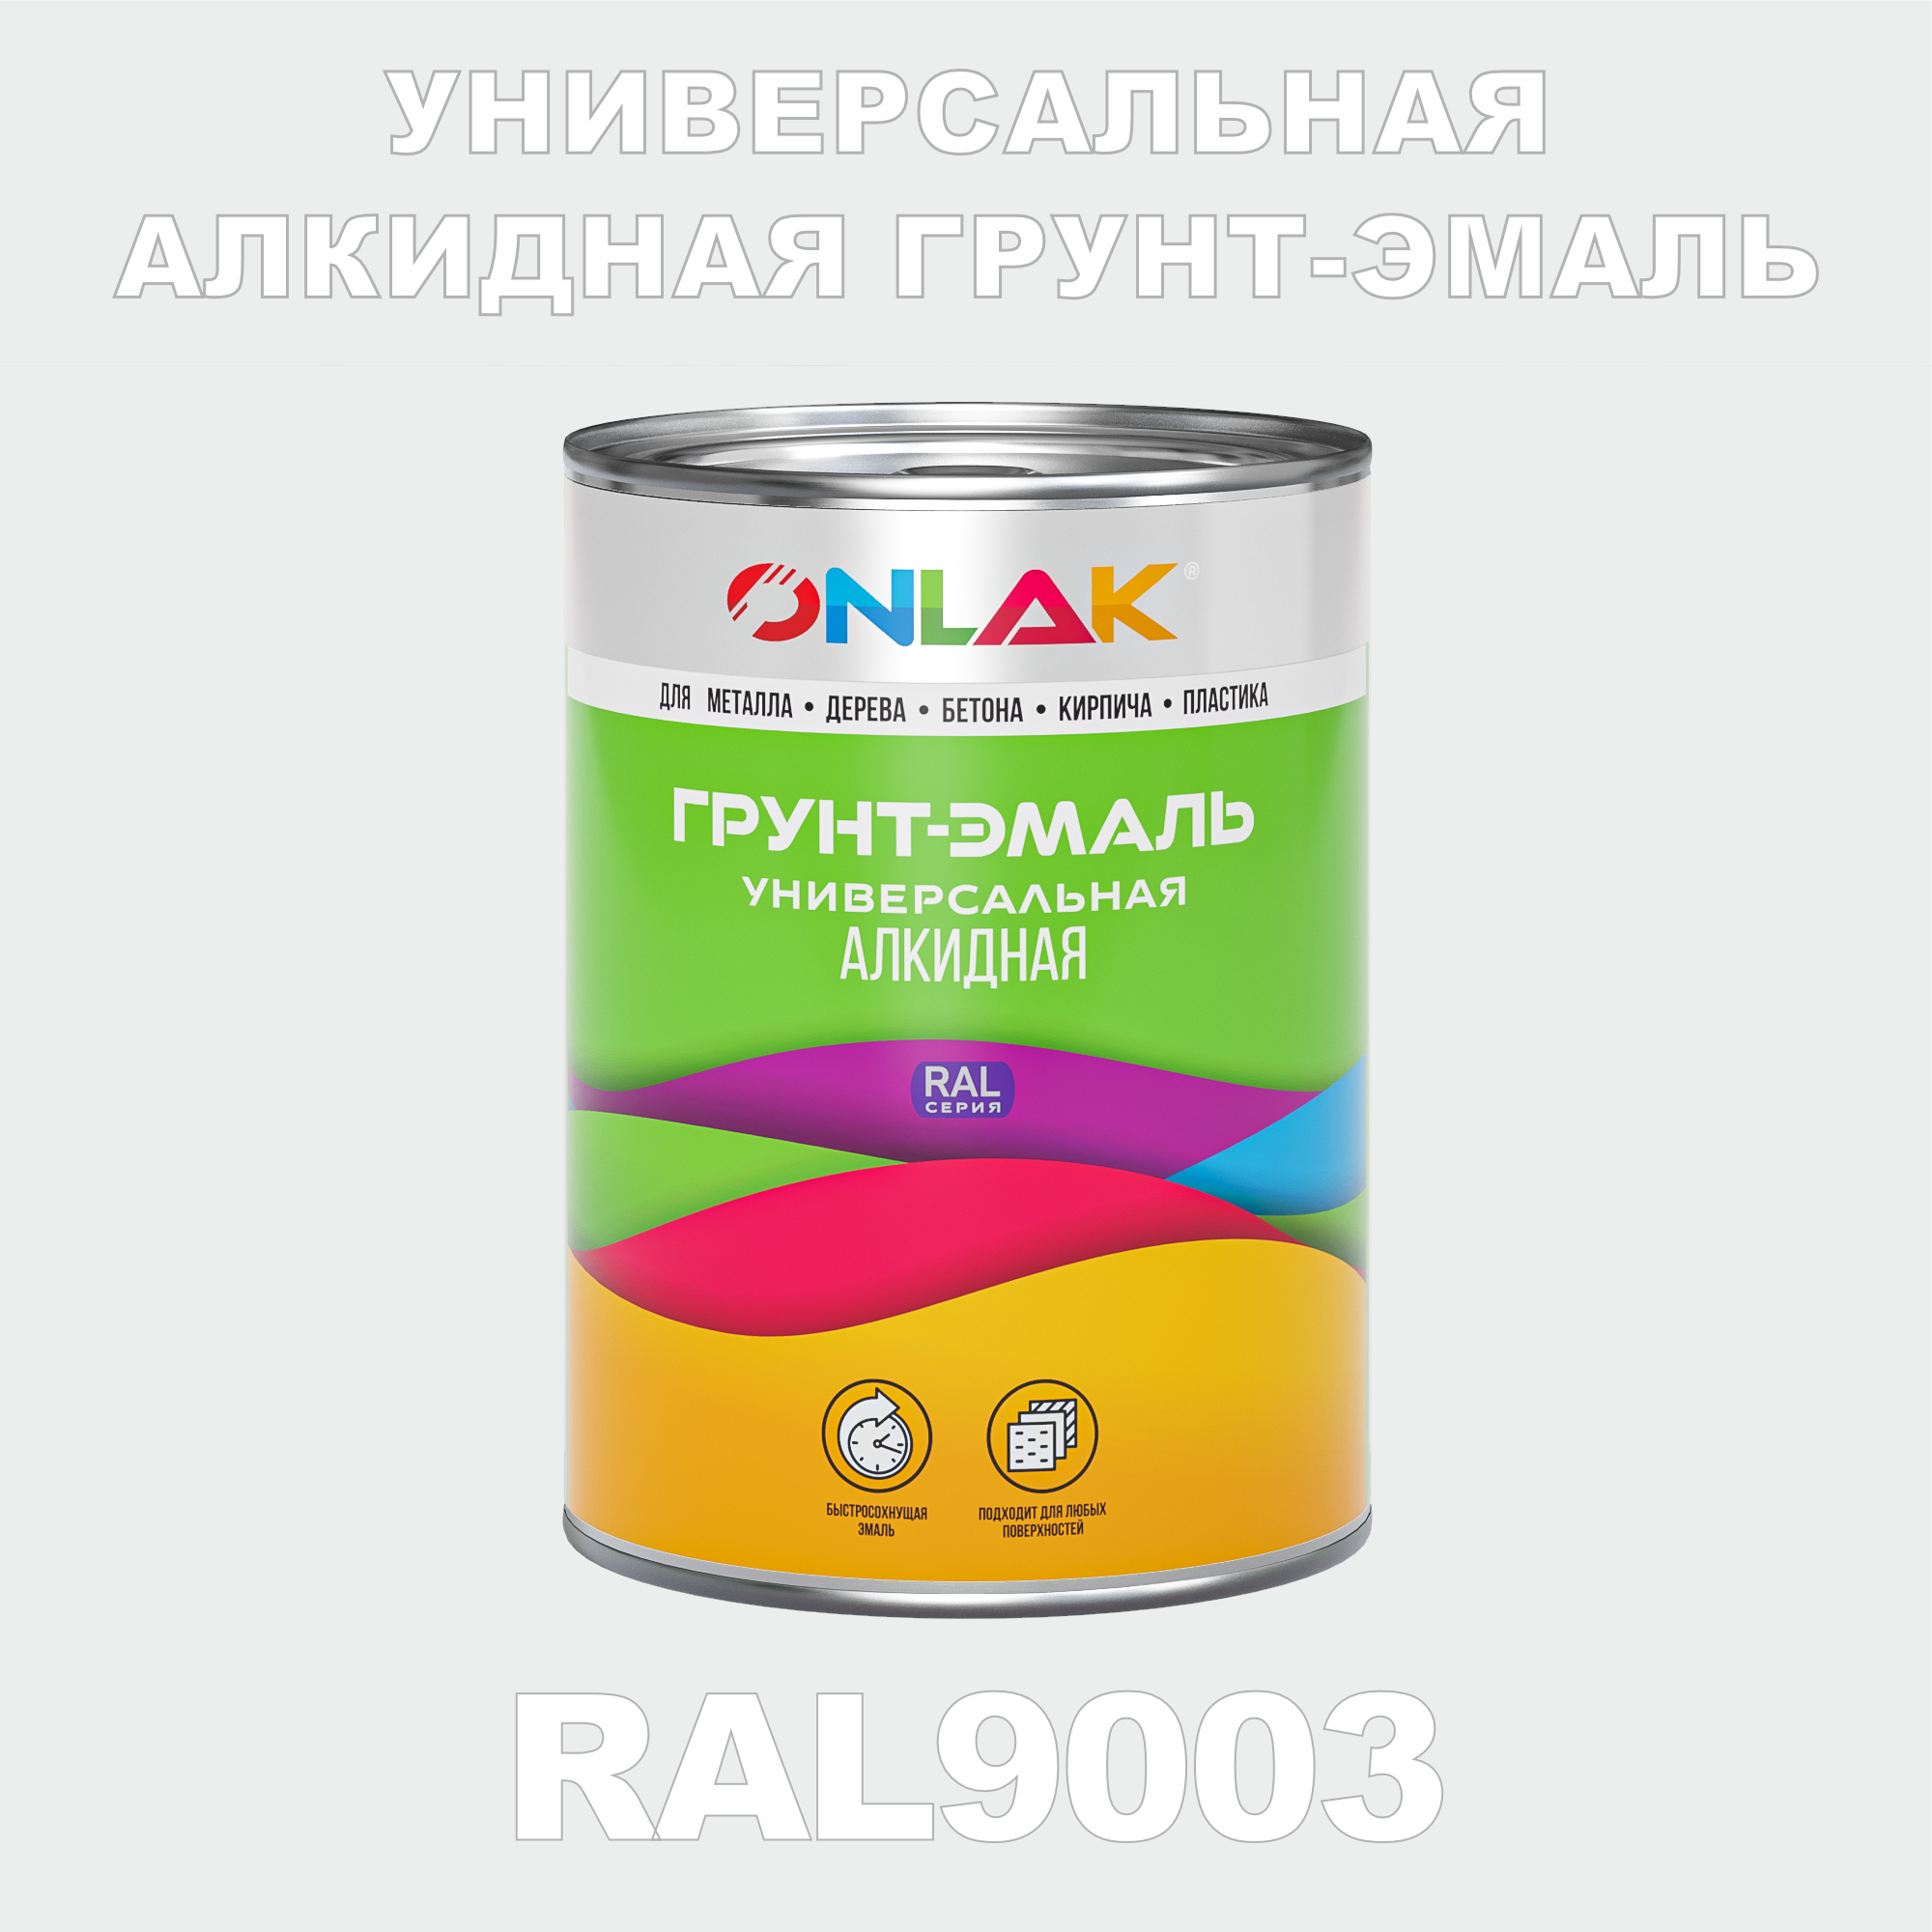 Грунт-эмаль ONLAK 1К RAL9003 антикоррозионная алкидная по металлу по ржавчине 1 кг грунт эмаль yollo по ржавчине алкидная синяя 0 9 кг